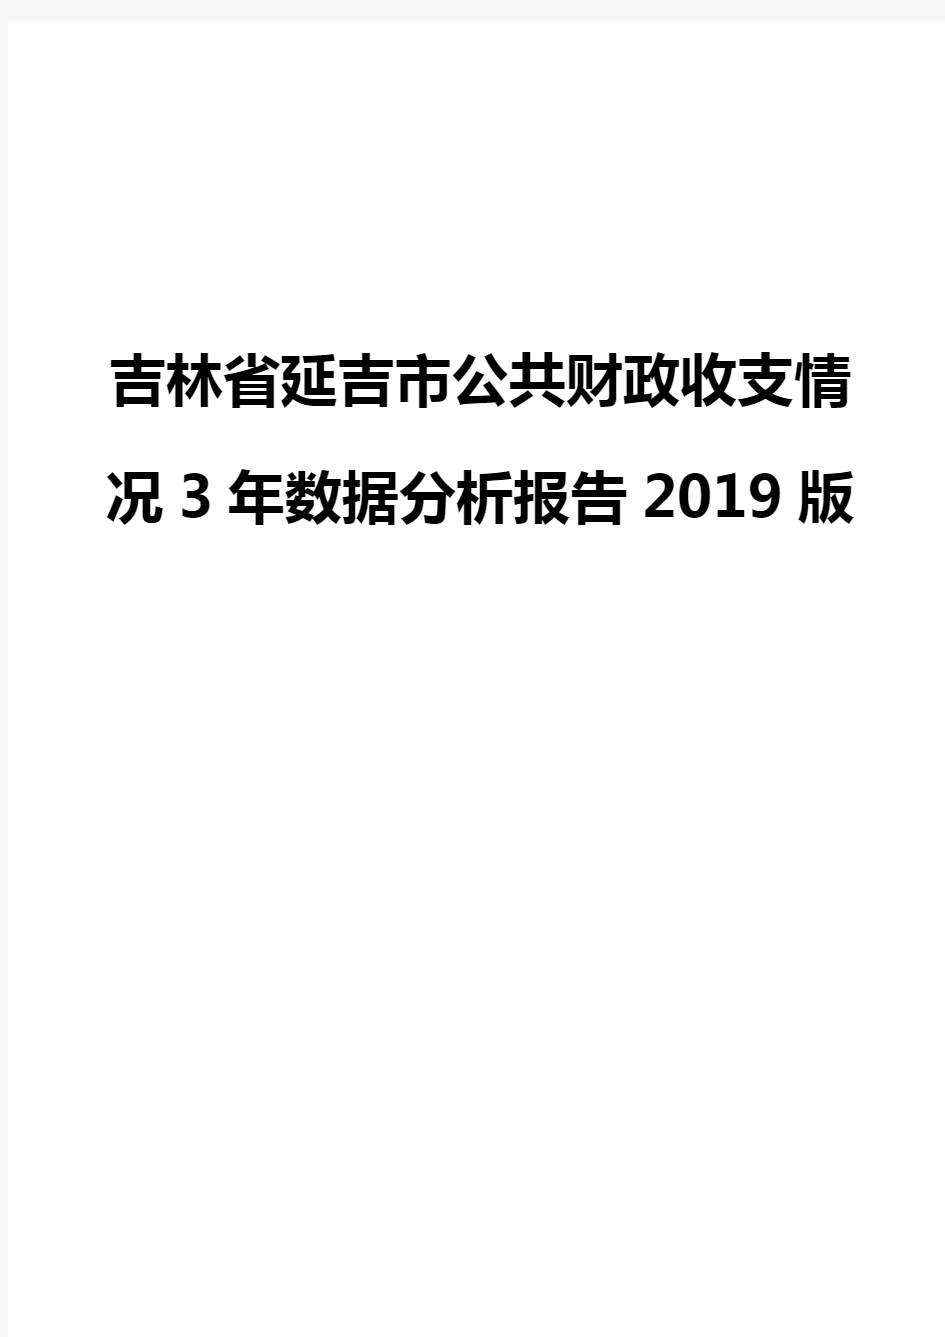 吉林省延吉市公共财政收支情况3年数据分析报告2019版